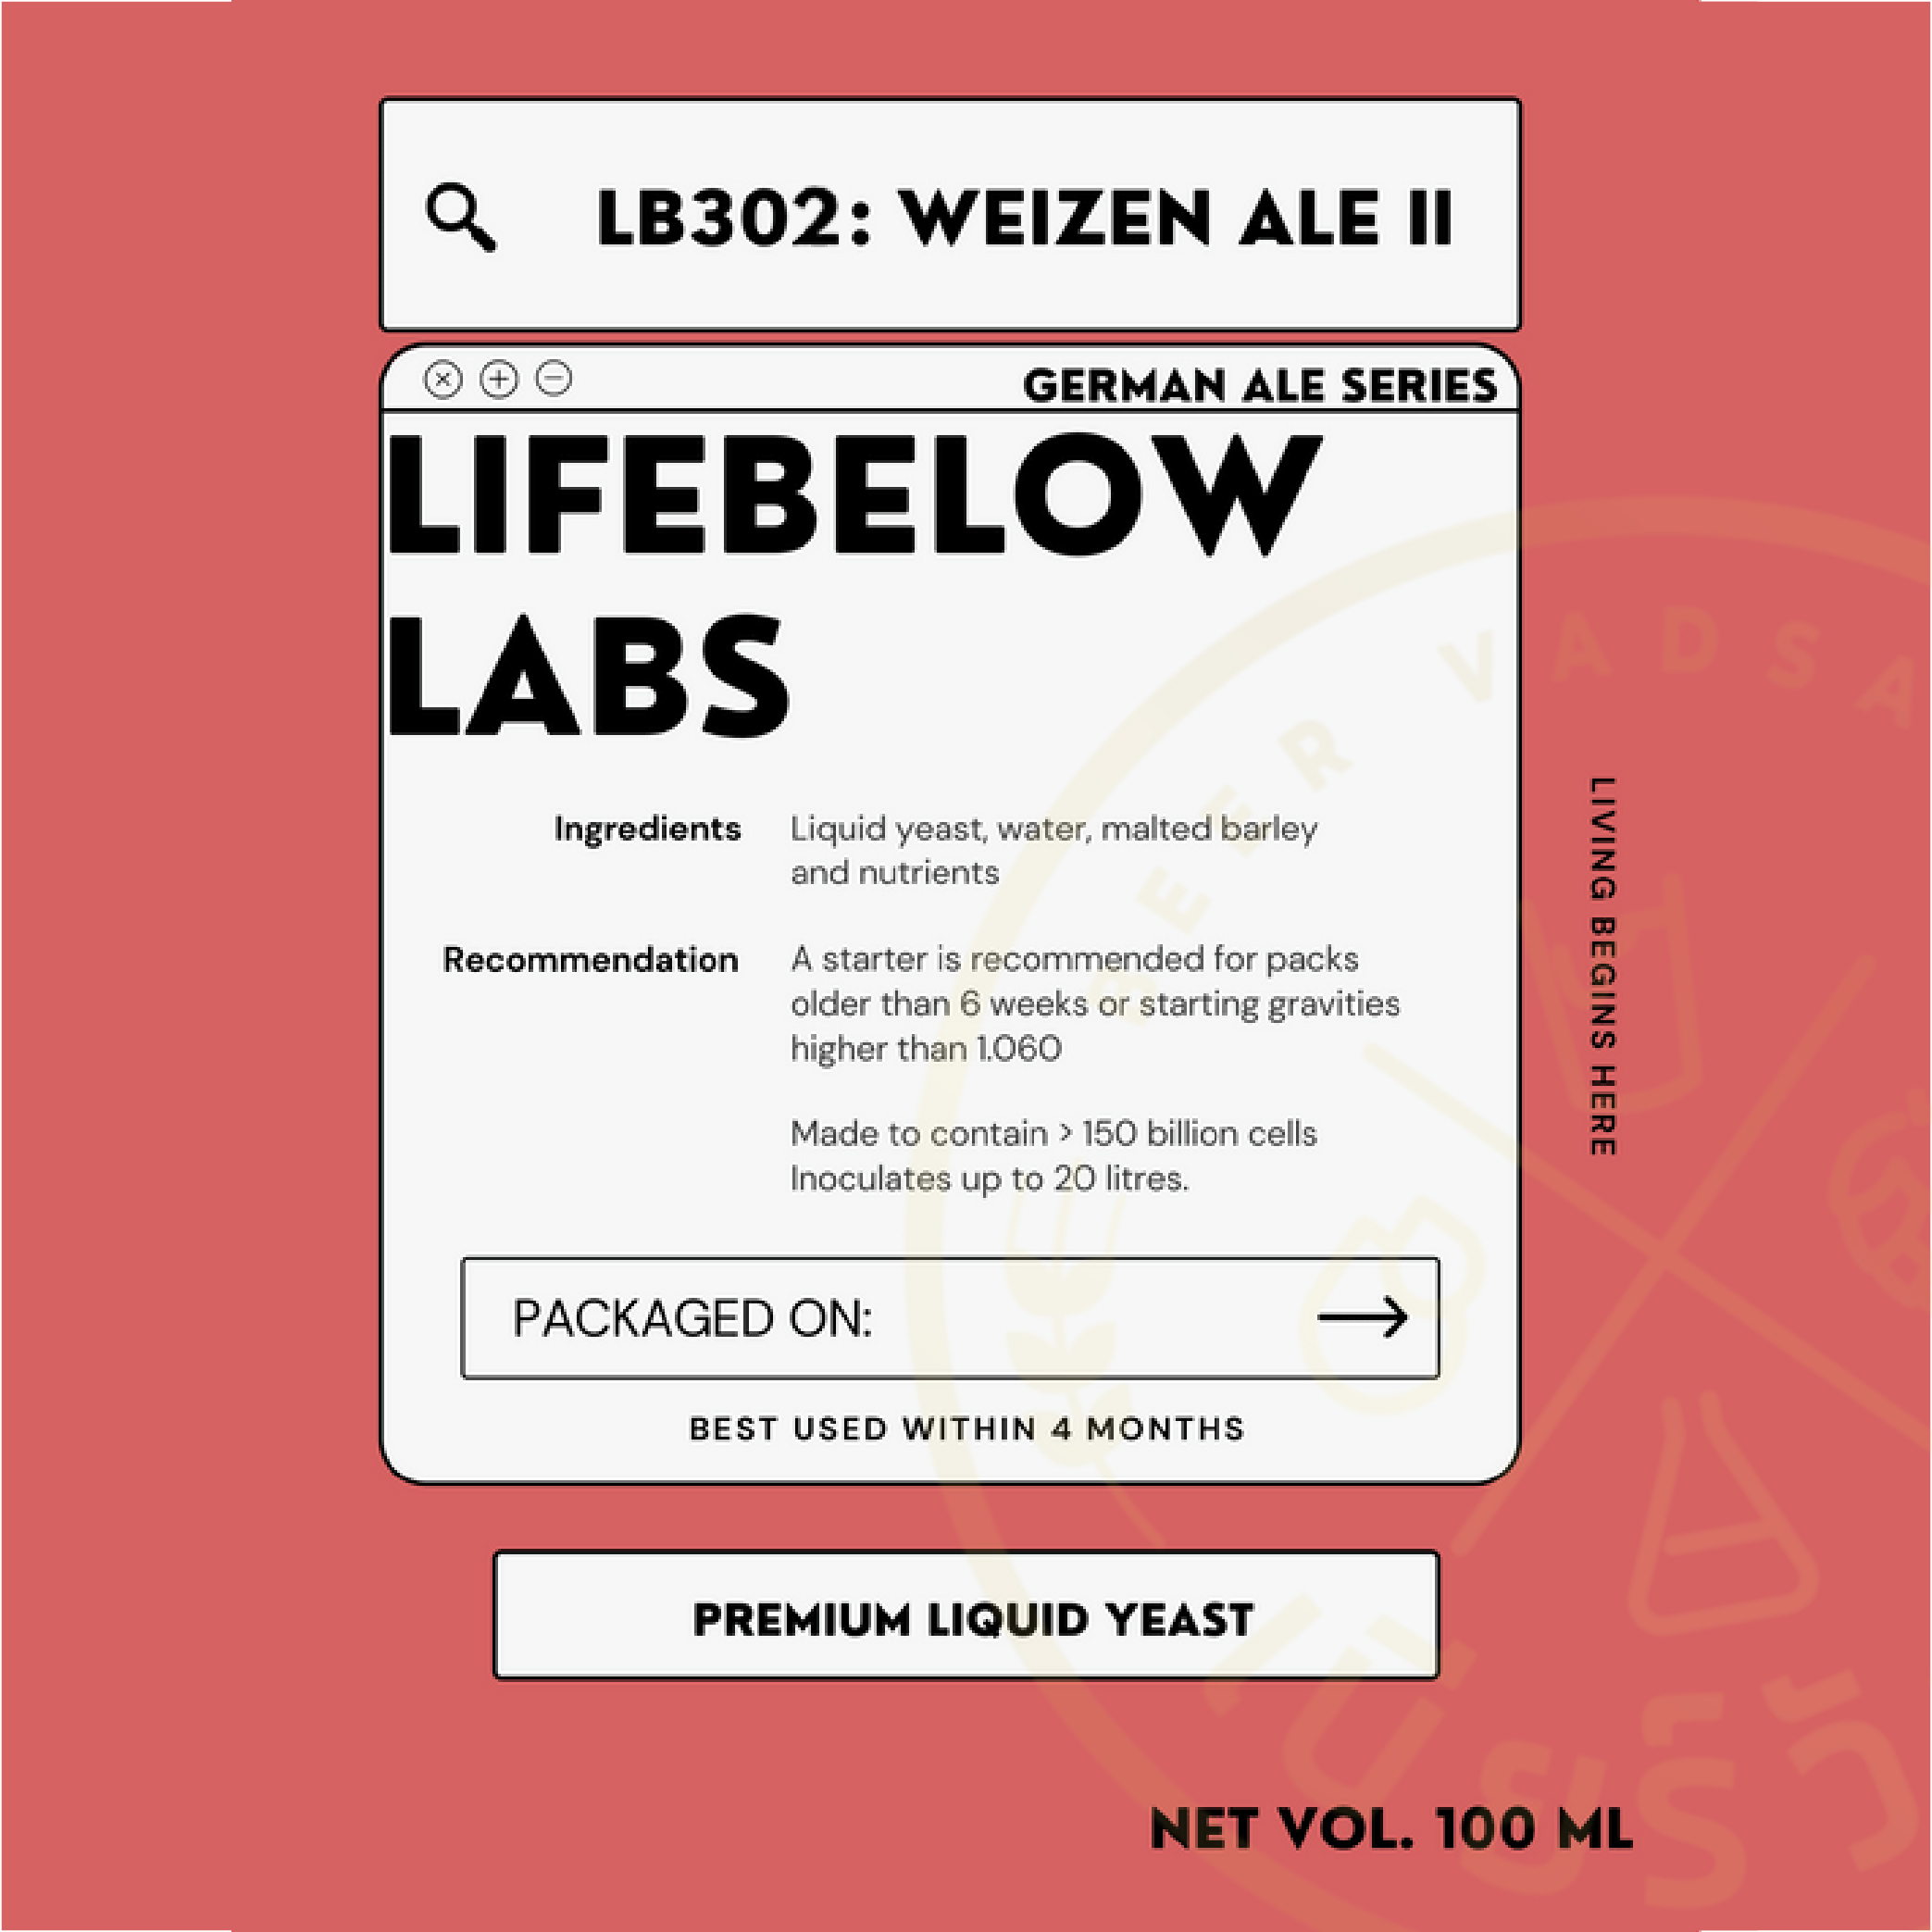 LB302 Weizen 2  (Life Below)